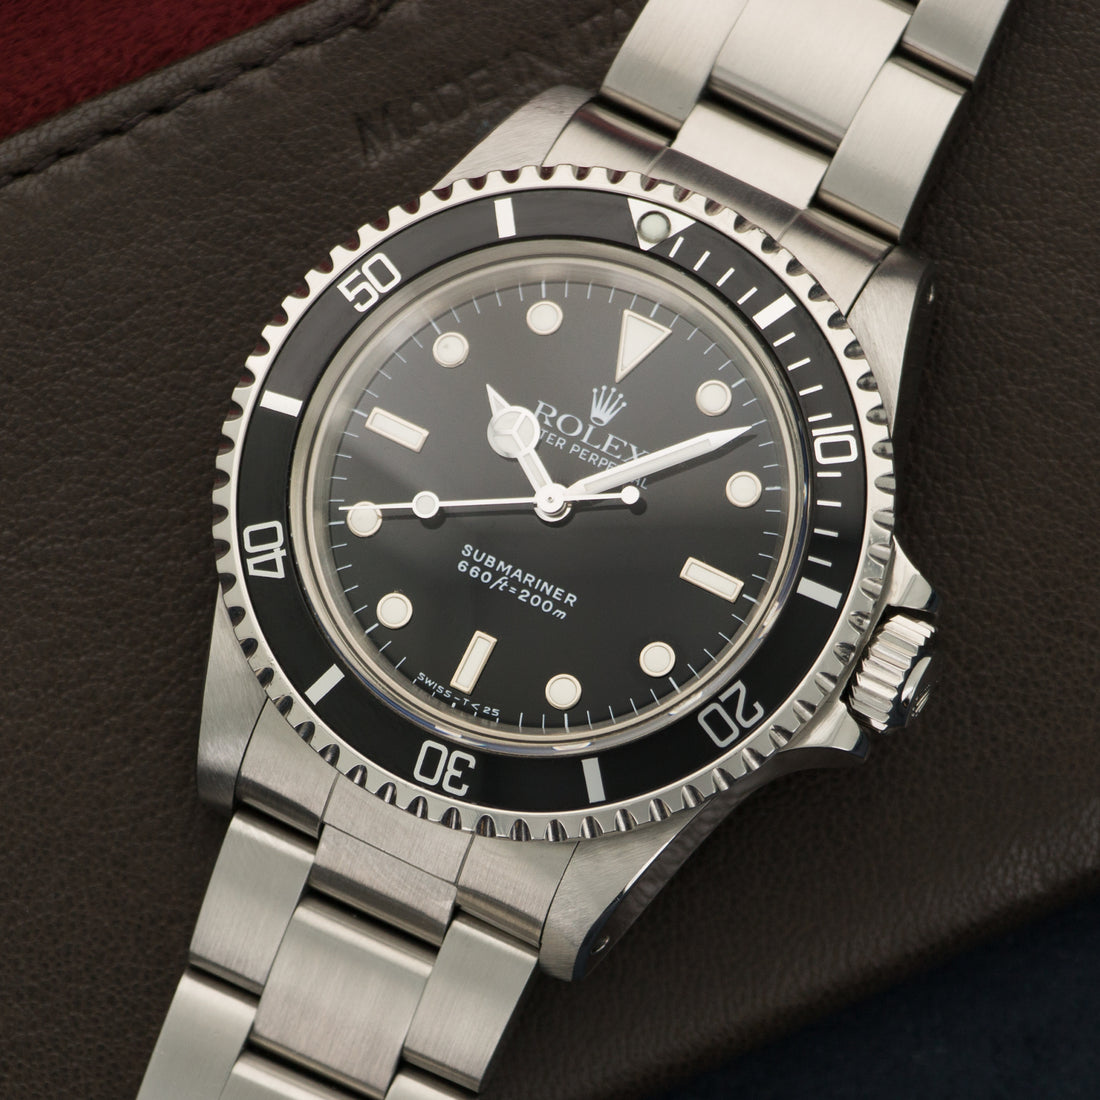 Rolex Stainless Steel Submariner Watch Ref. 5513